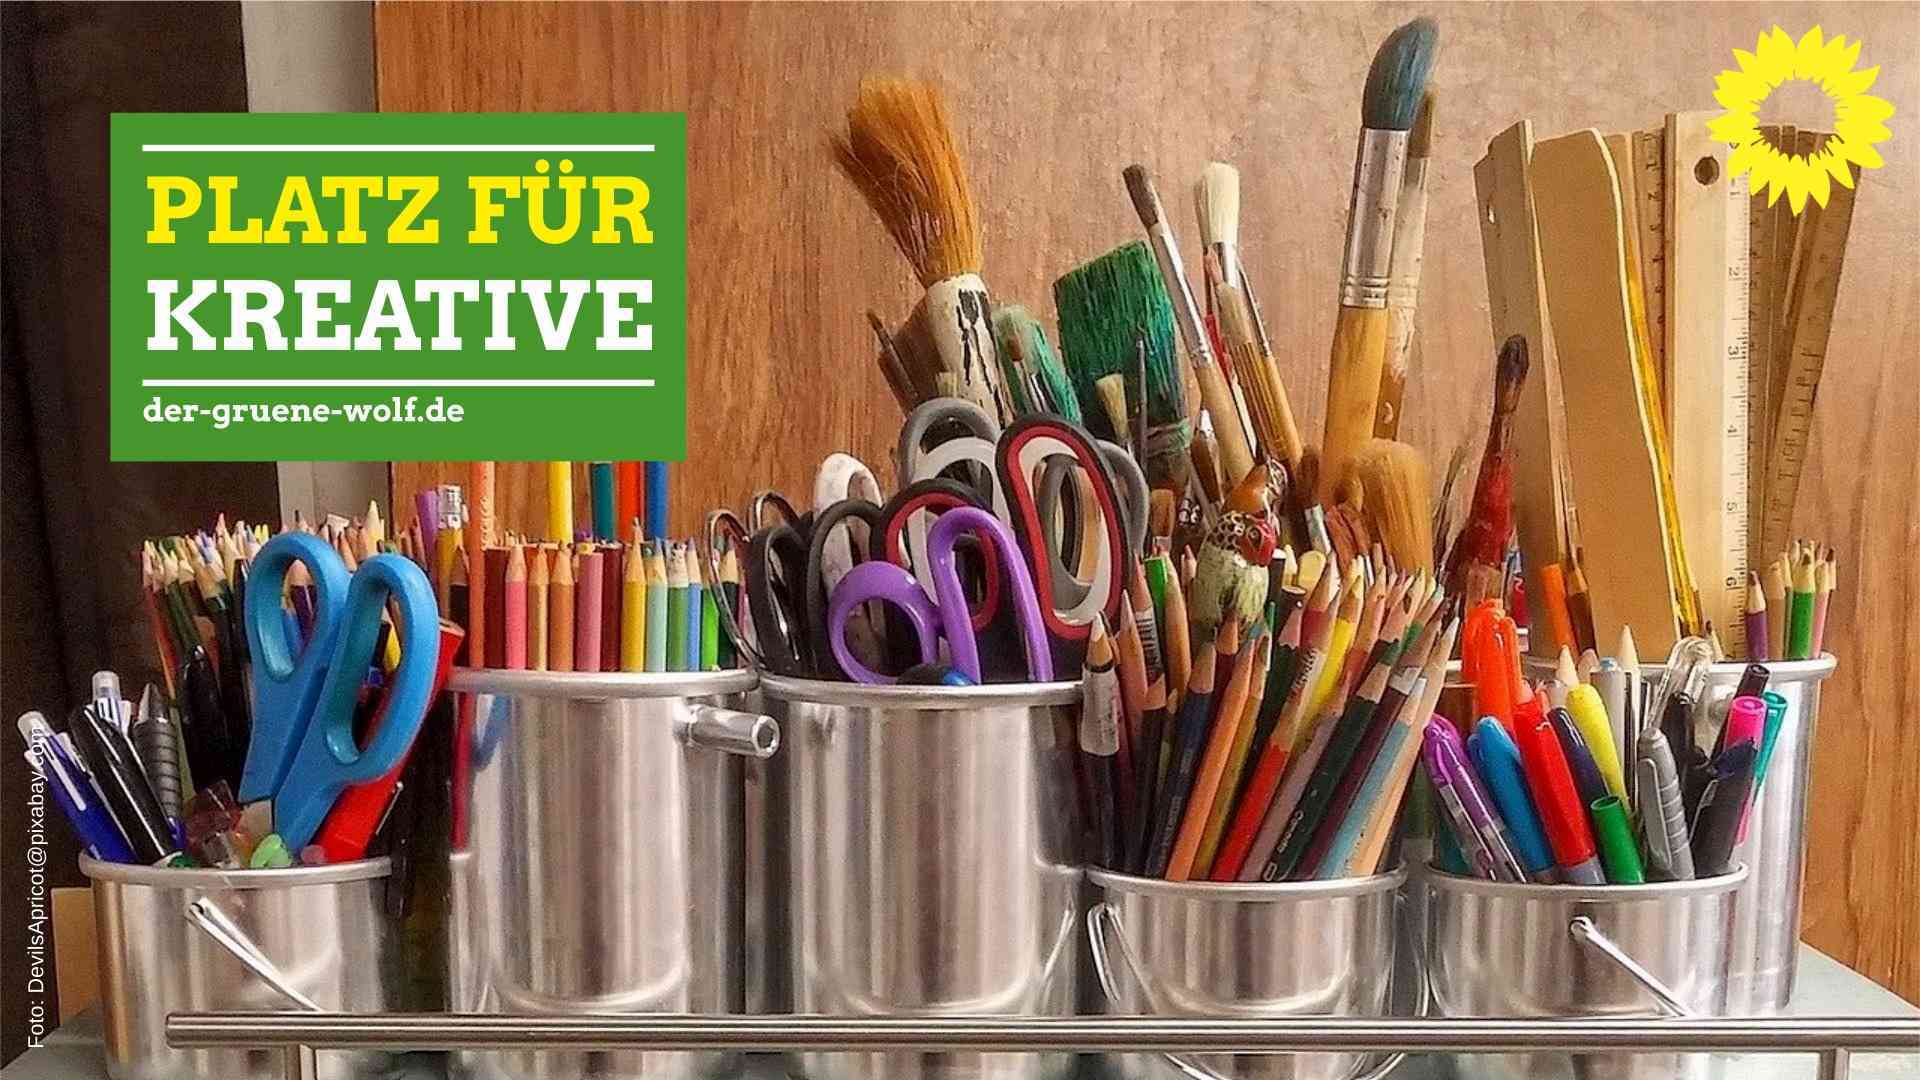 Der grüne Wolf will Platz für Kreative in Düsseldorf schaffen